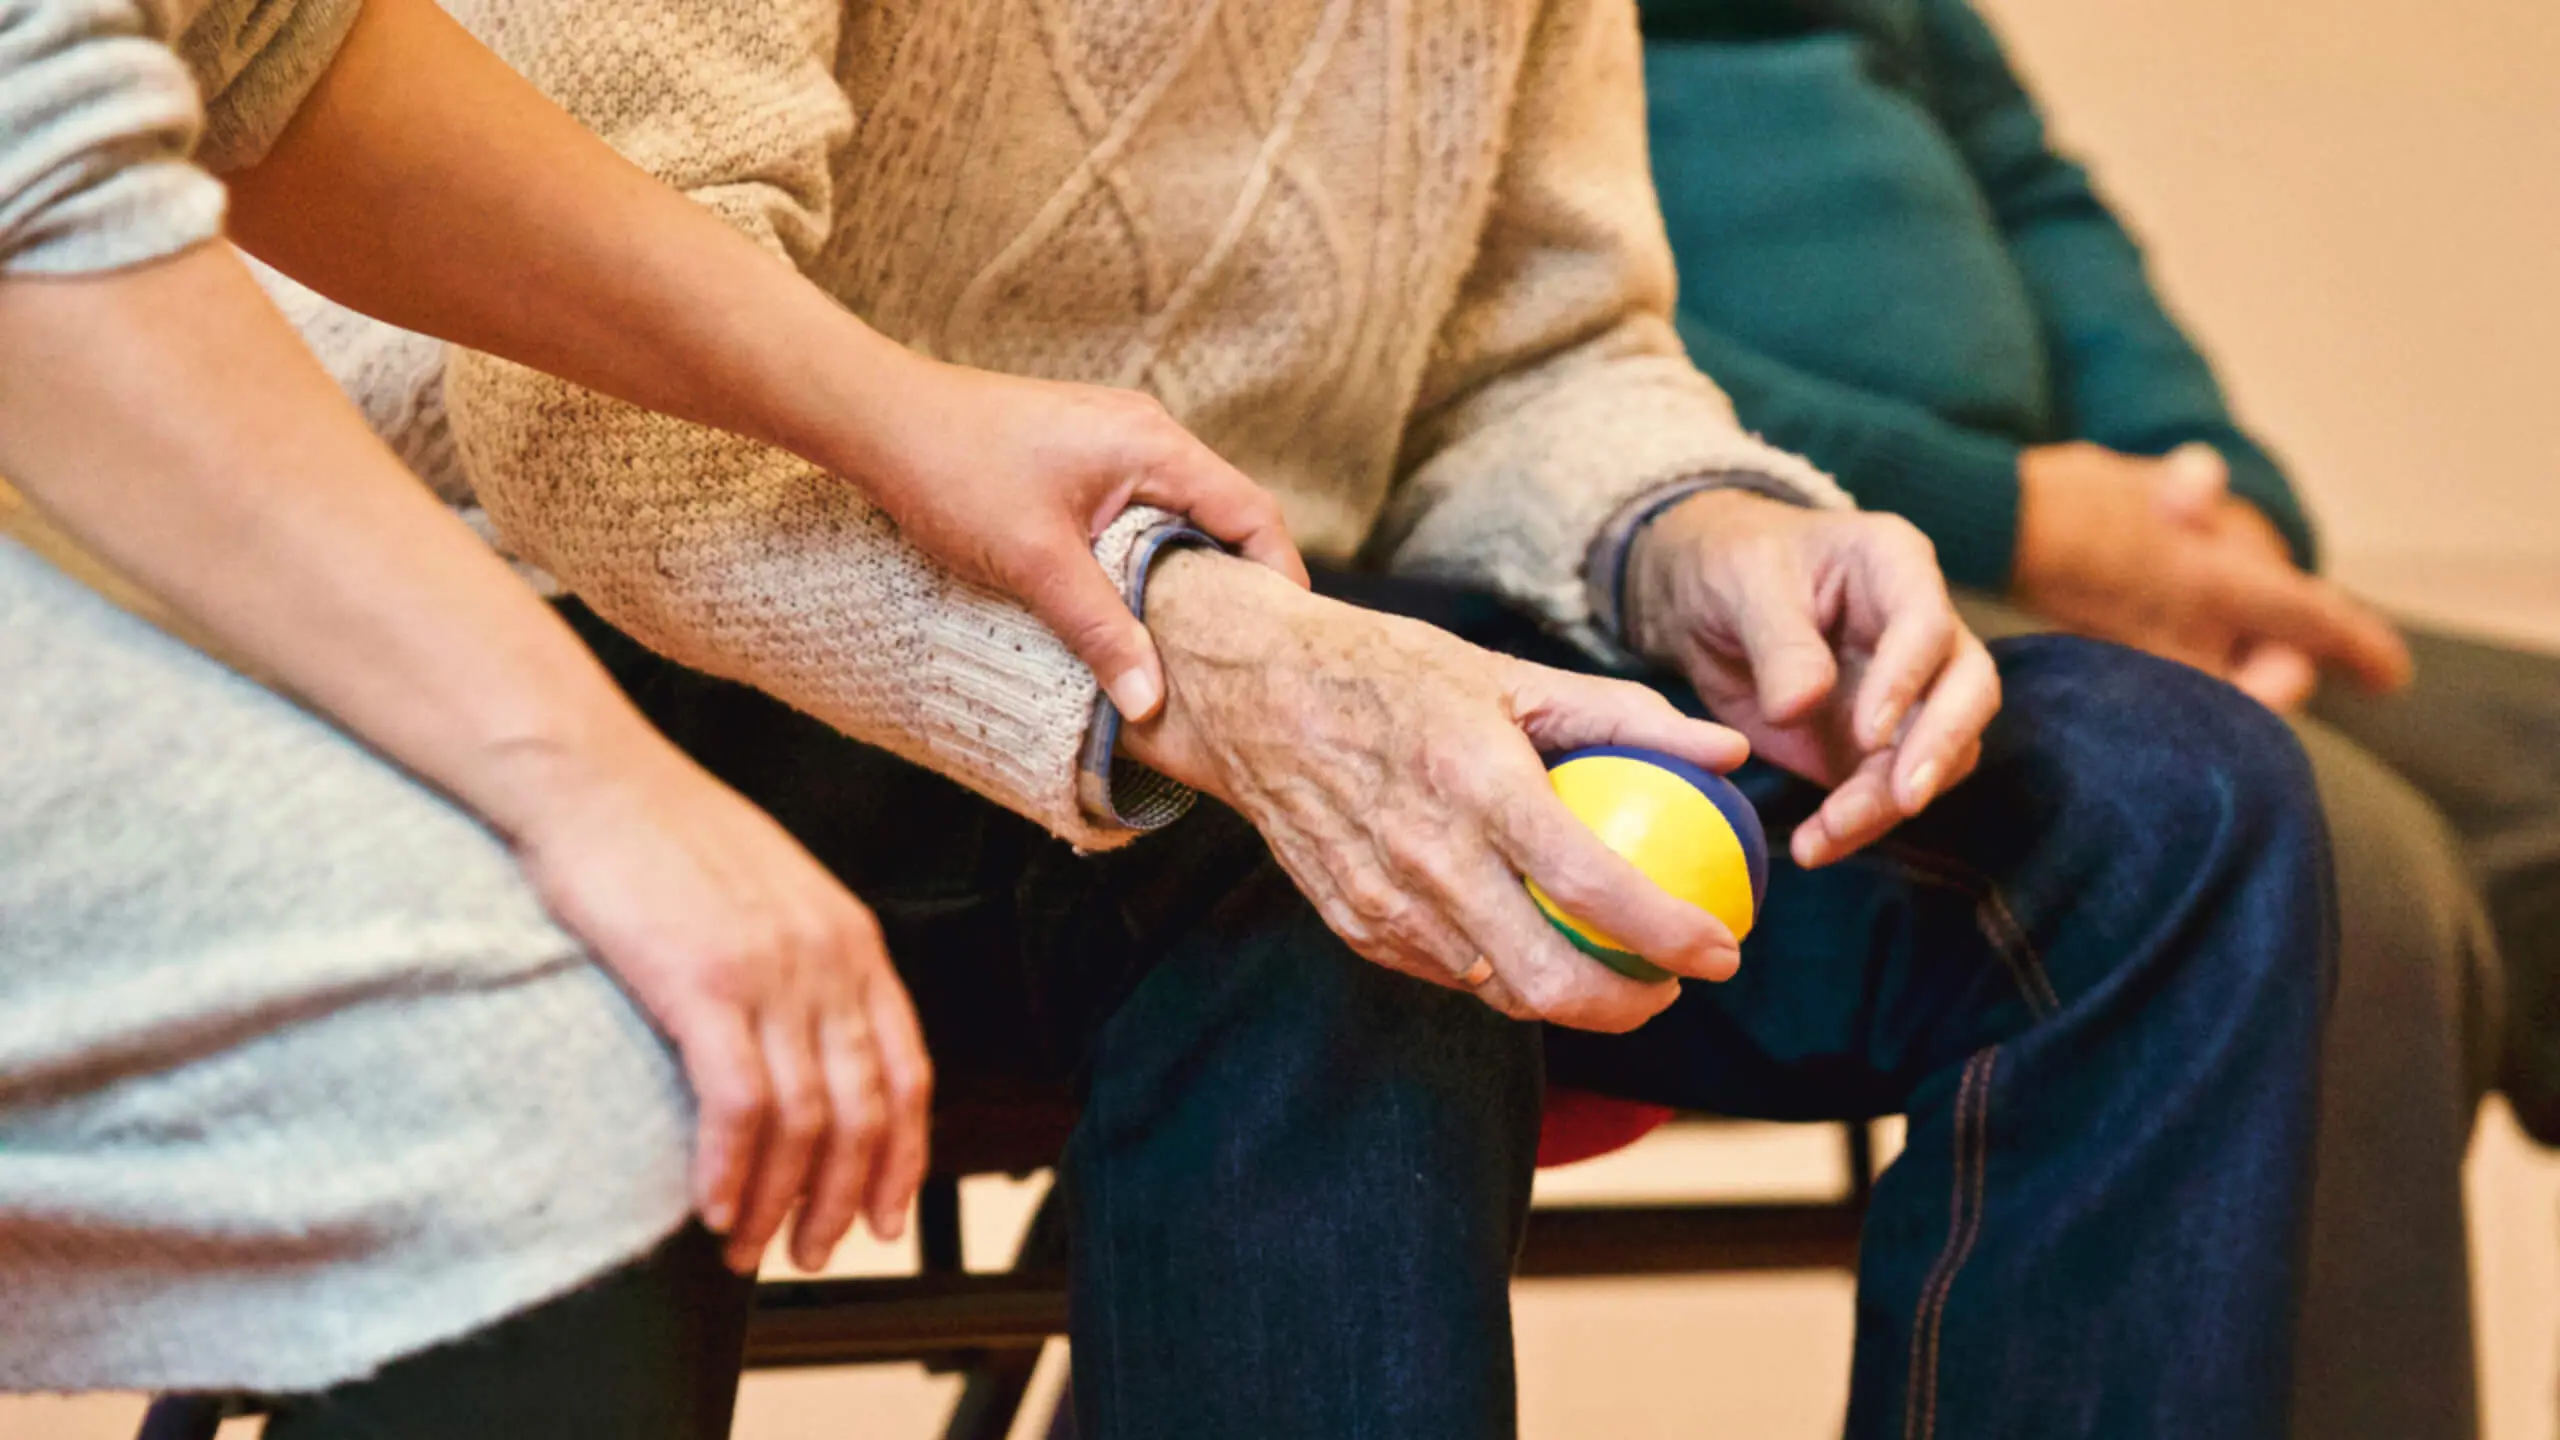 abuela ayuda psicologica - Cuál es el rol de los abuelos en terapia